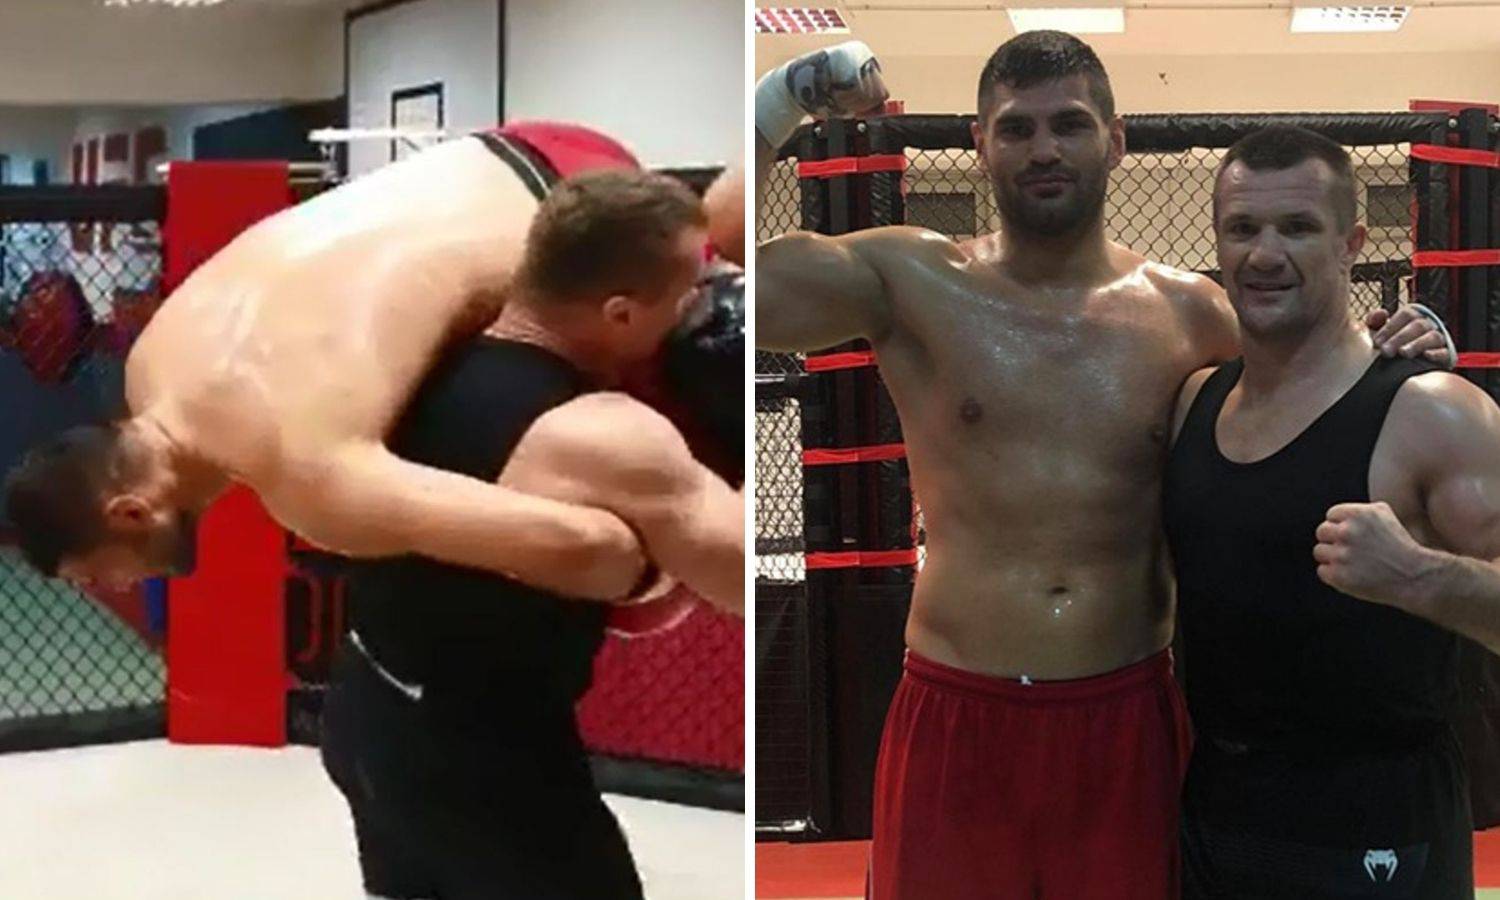 Hrga i Mirko trenirali zajedno: Filip je budući boksački prvak